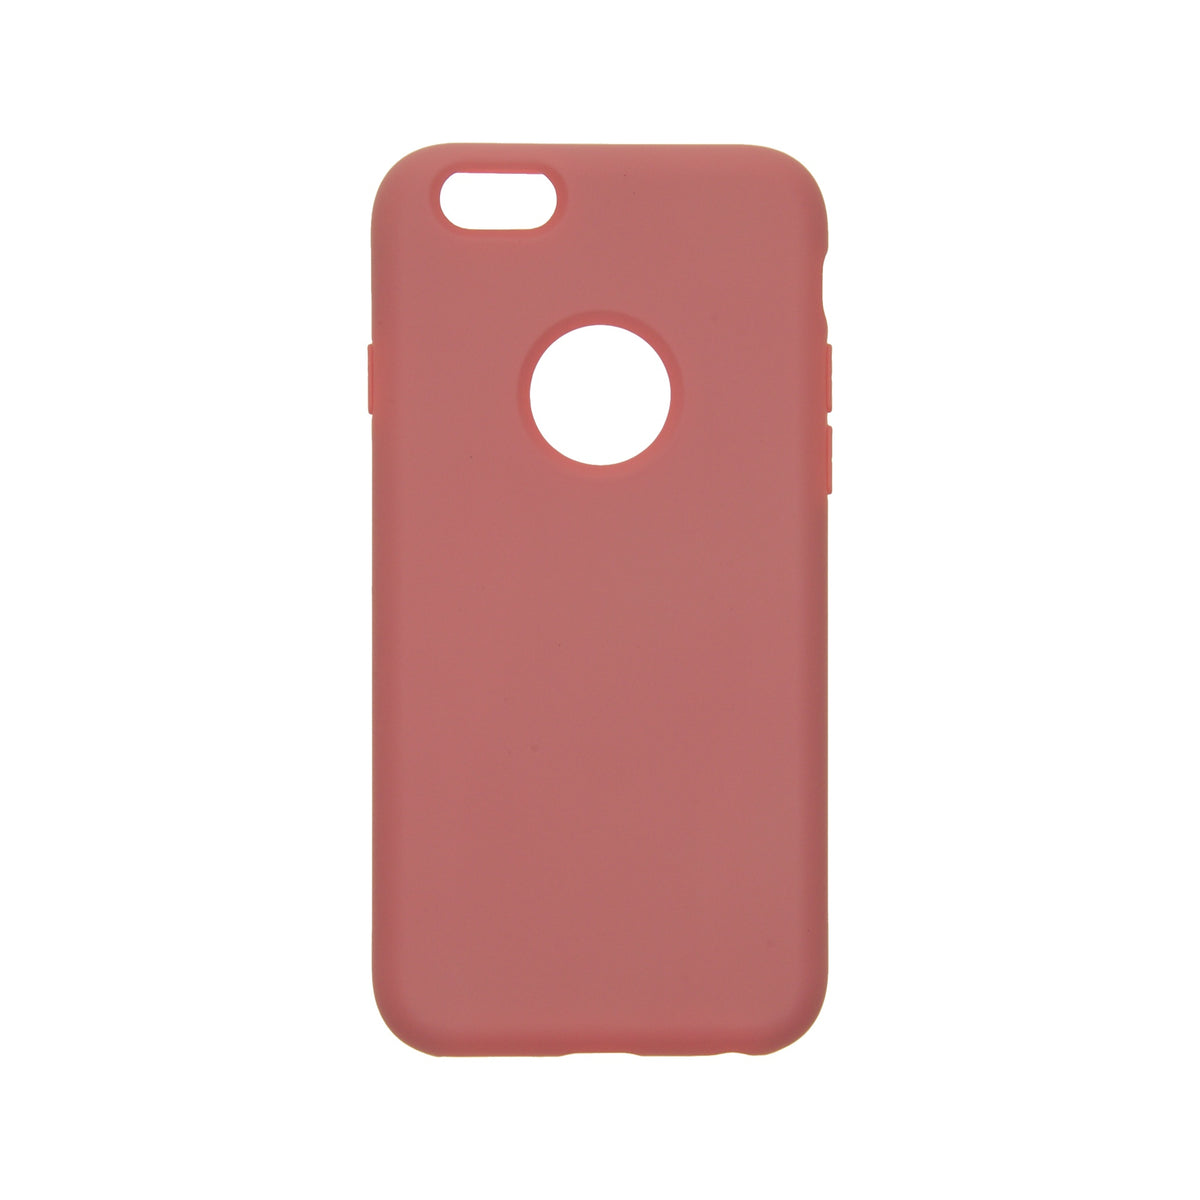 Estuche EL REY silicon rosado iphone 6 plus